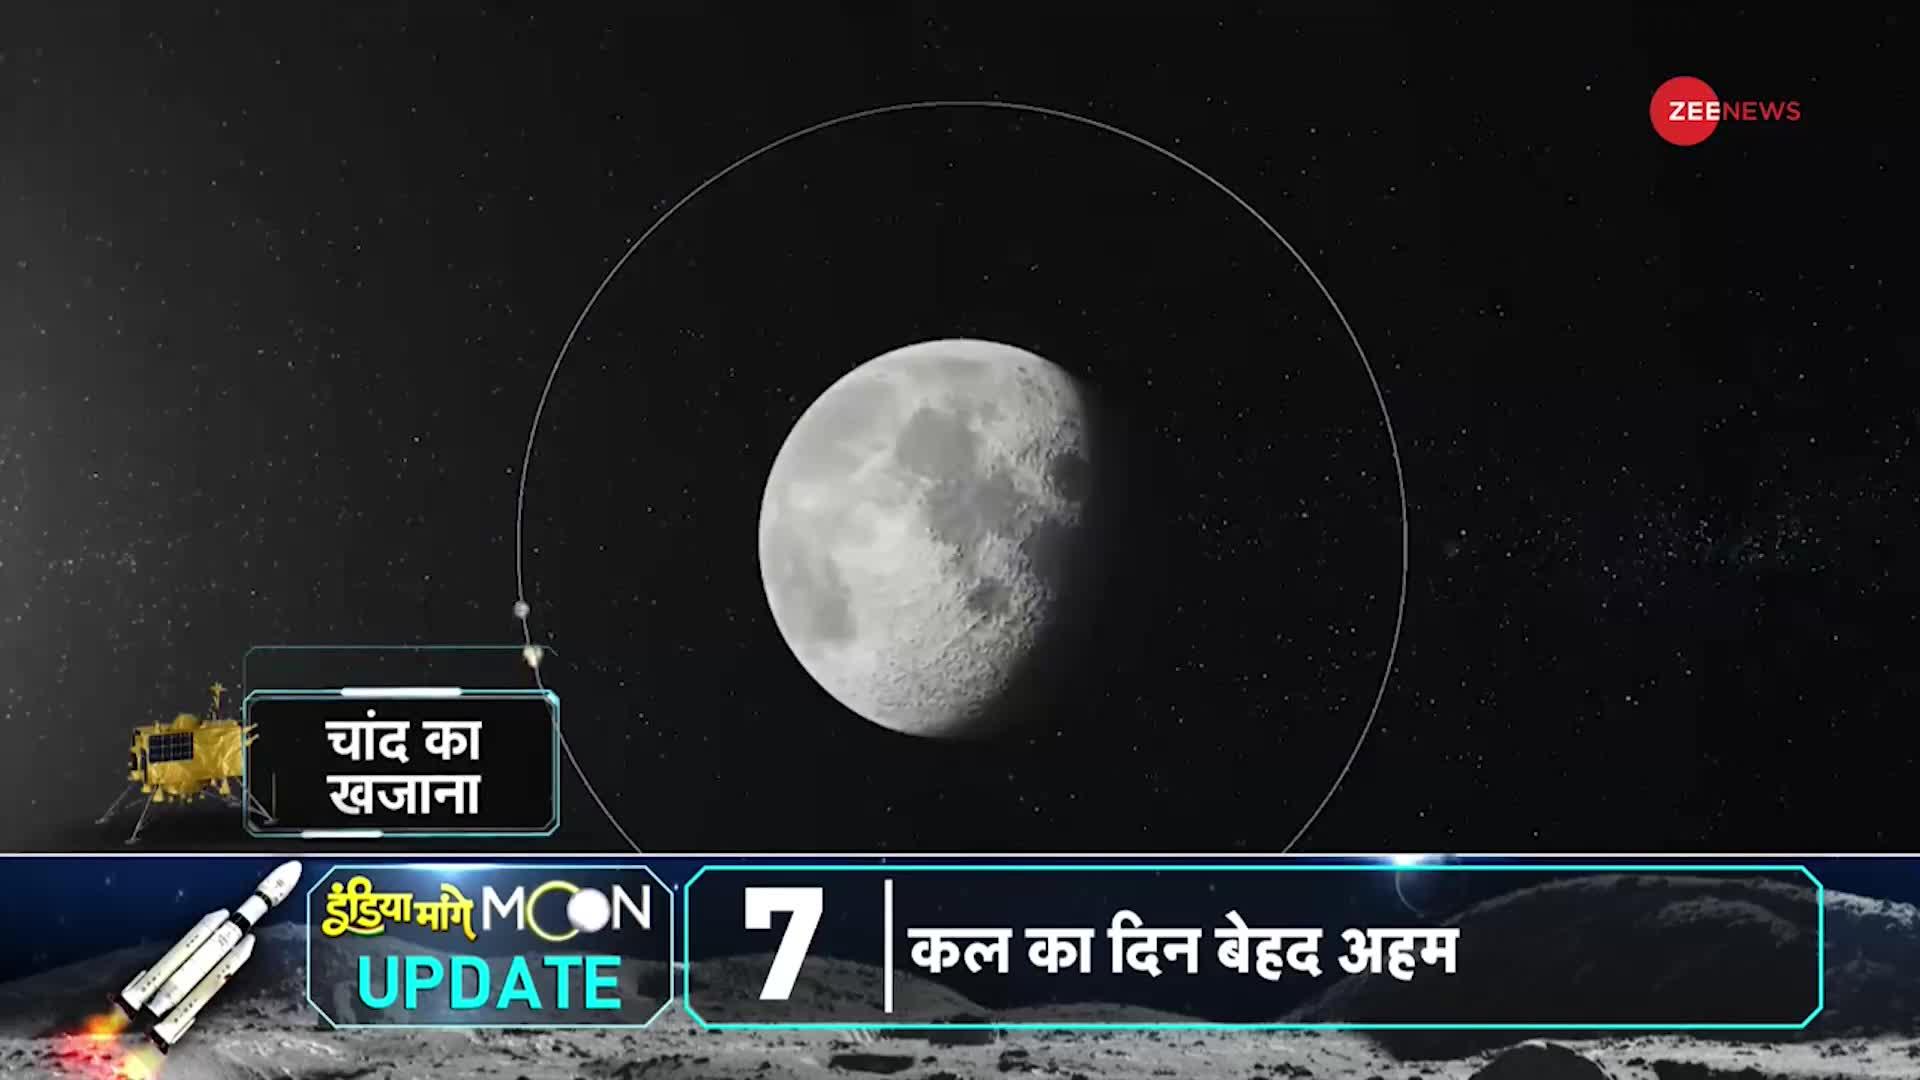 Chandrayaan-3 LIVE: चंद्रयान पर सबसे बड़ी खुशखबरी, चांद के बेहद करीब पहुंचा भारत!